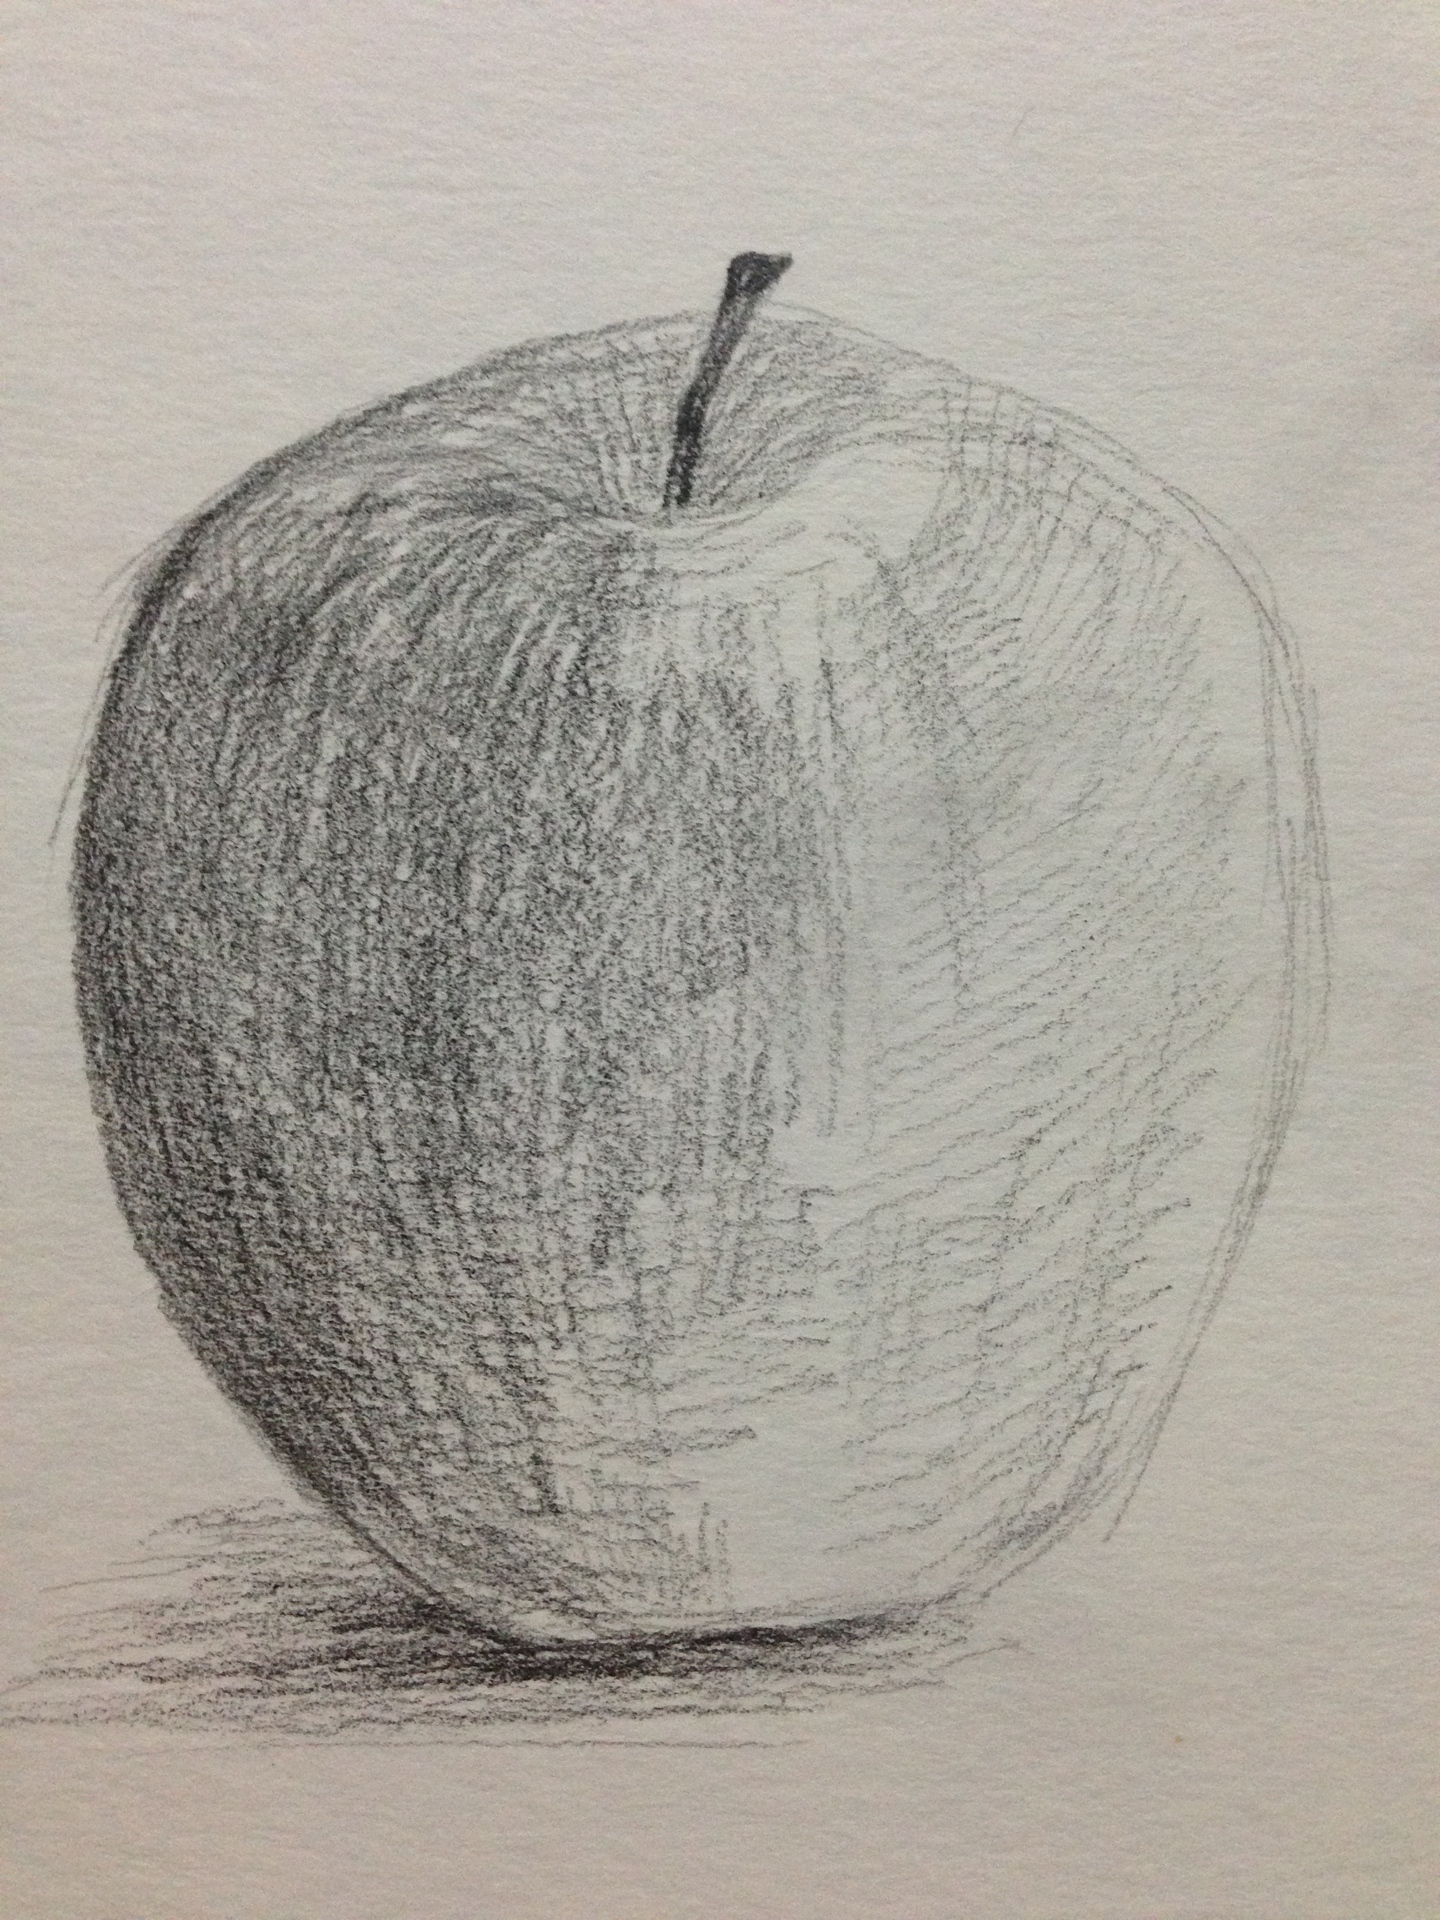 りんごデッサン 描き始め編 S S絵画教室